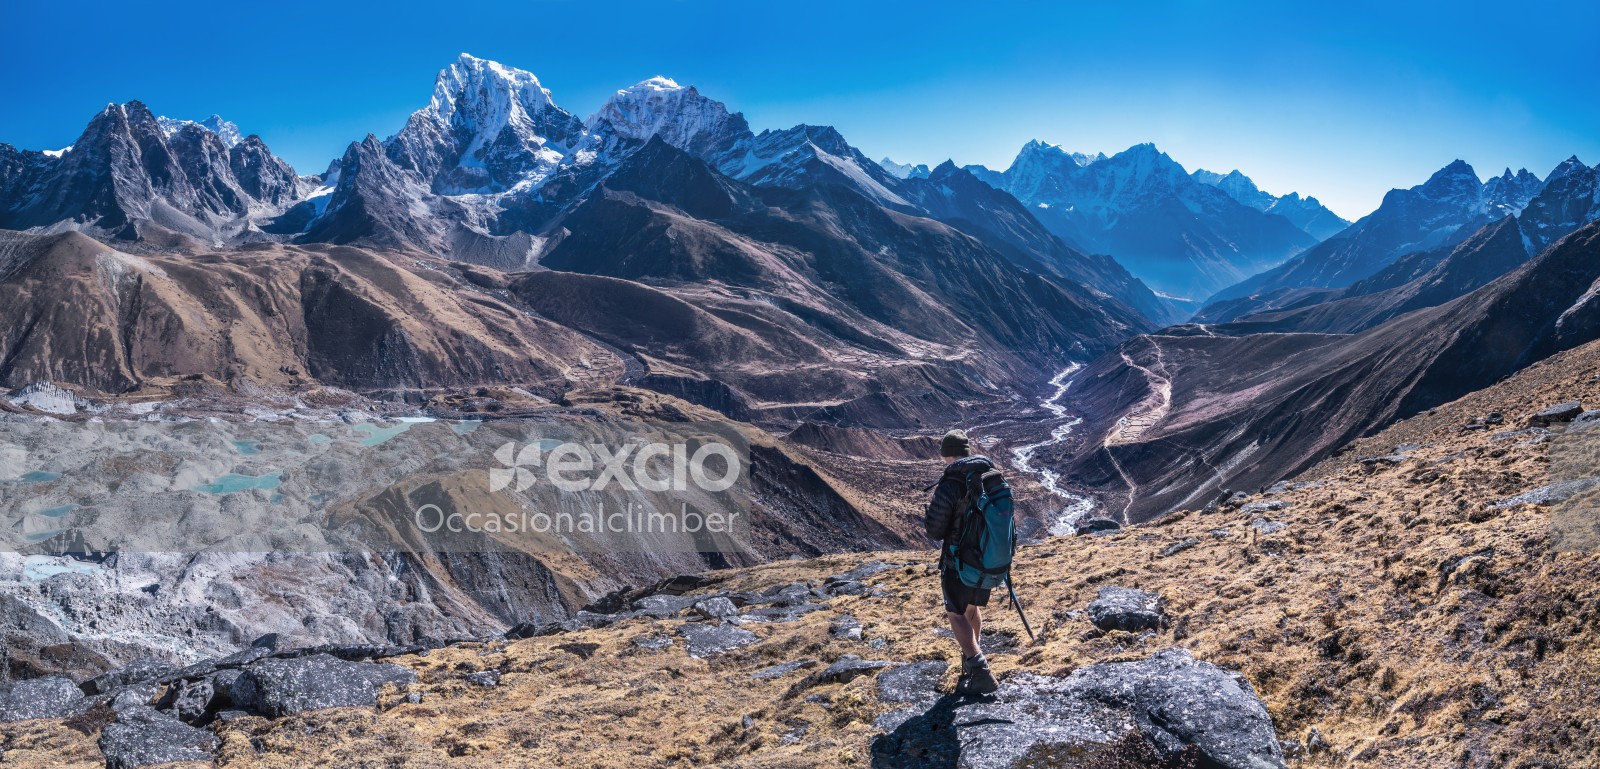 Khumbu viewpoint above Pangka